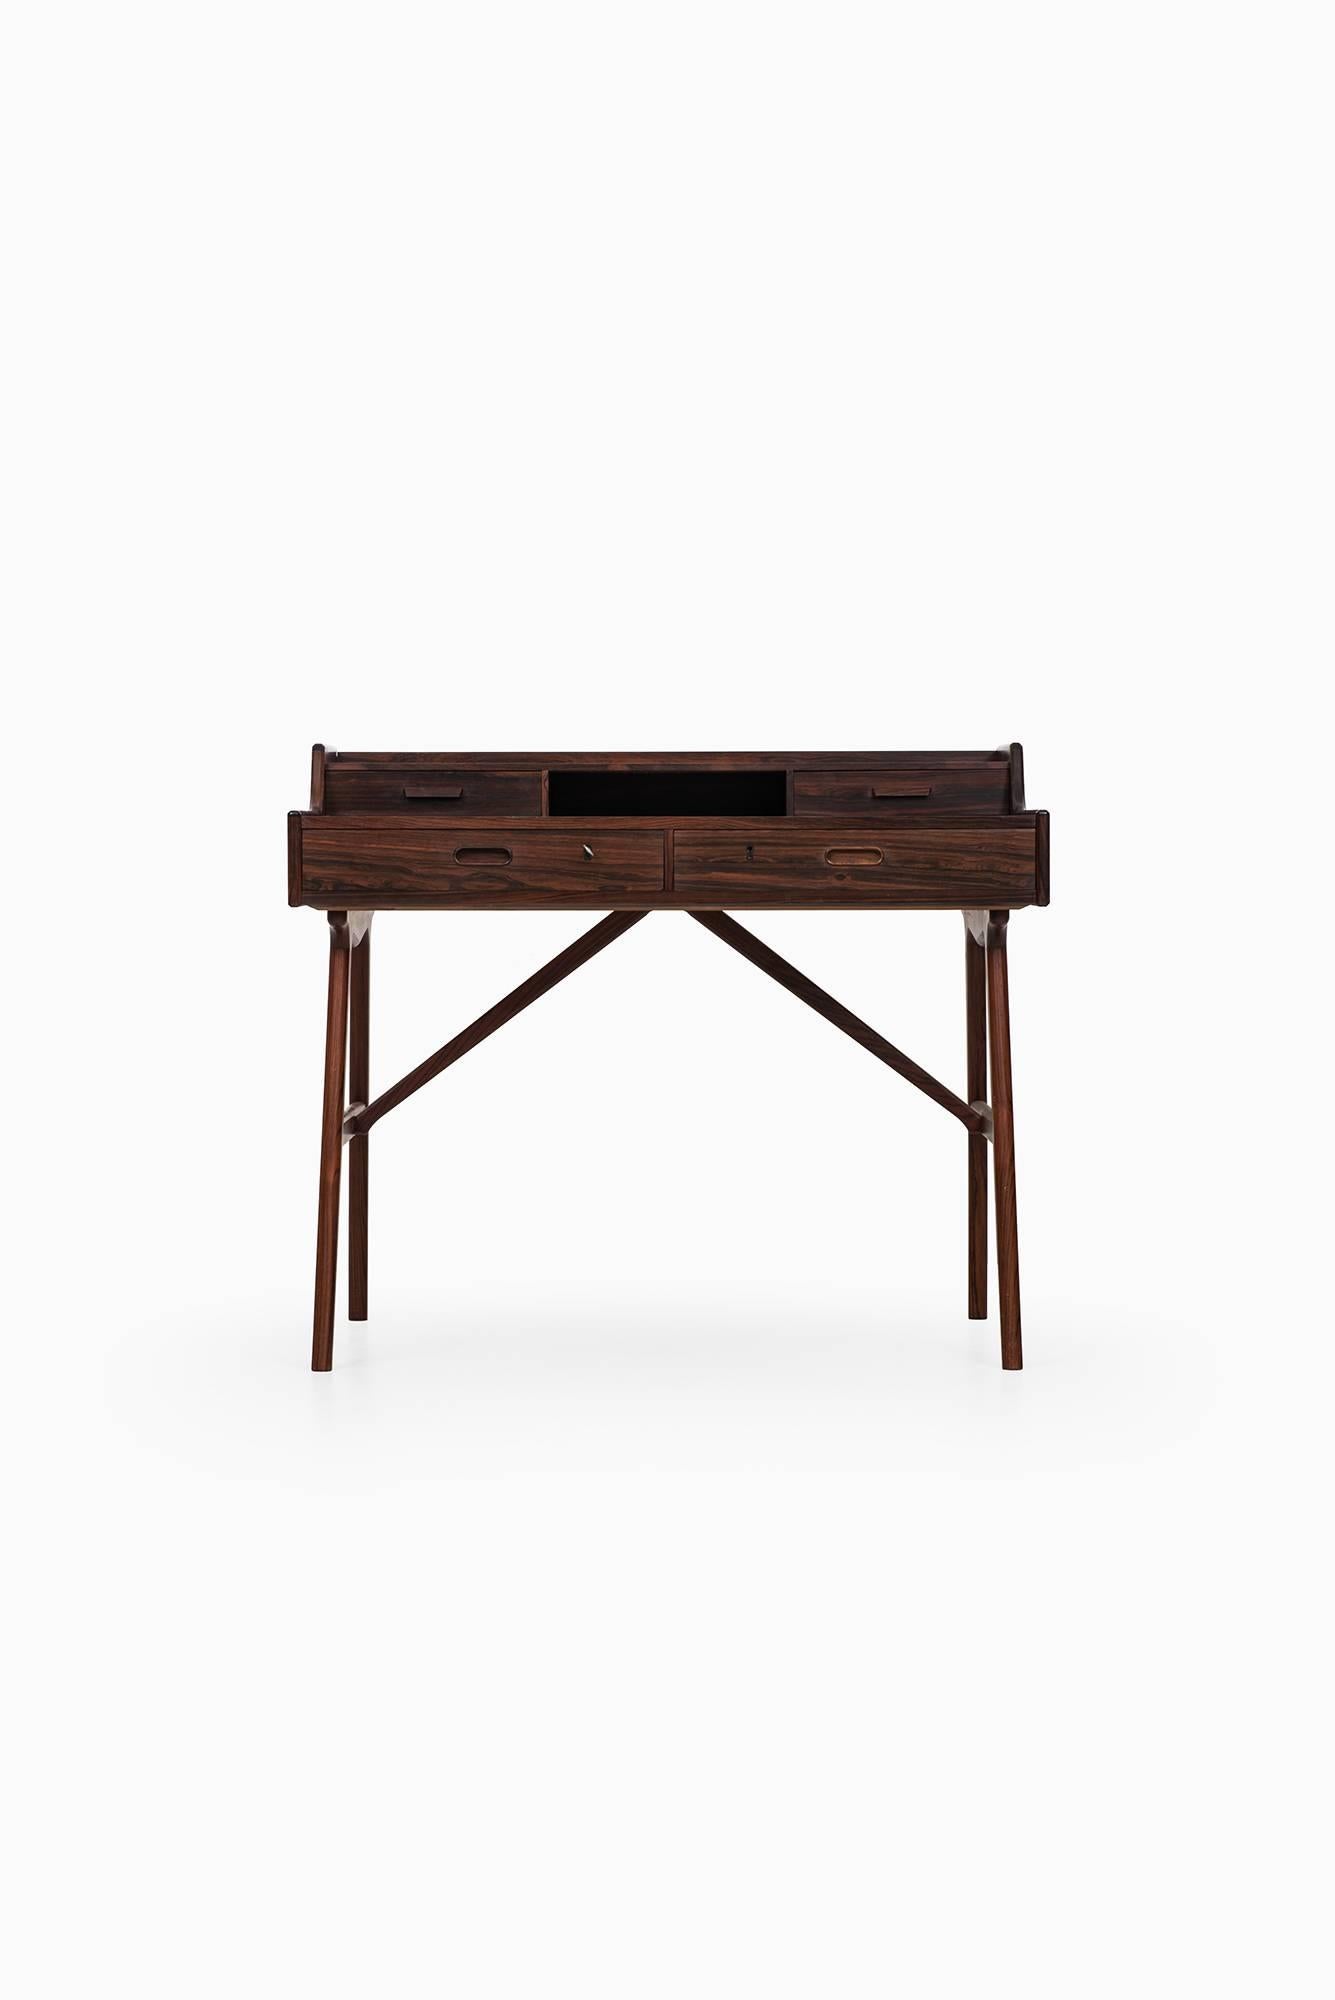 Rare desk model 64 designed by Arne-Wahl Iversen. Produced by Vinde Møbelfabrik in Denmark.